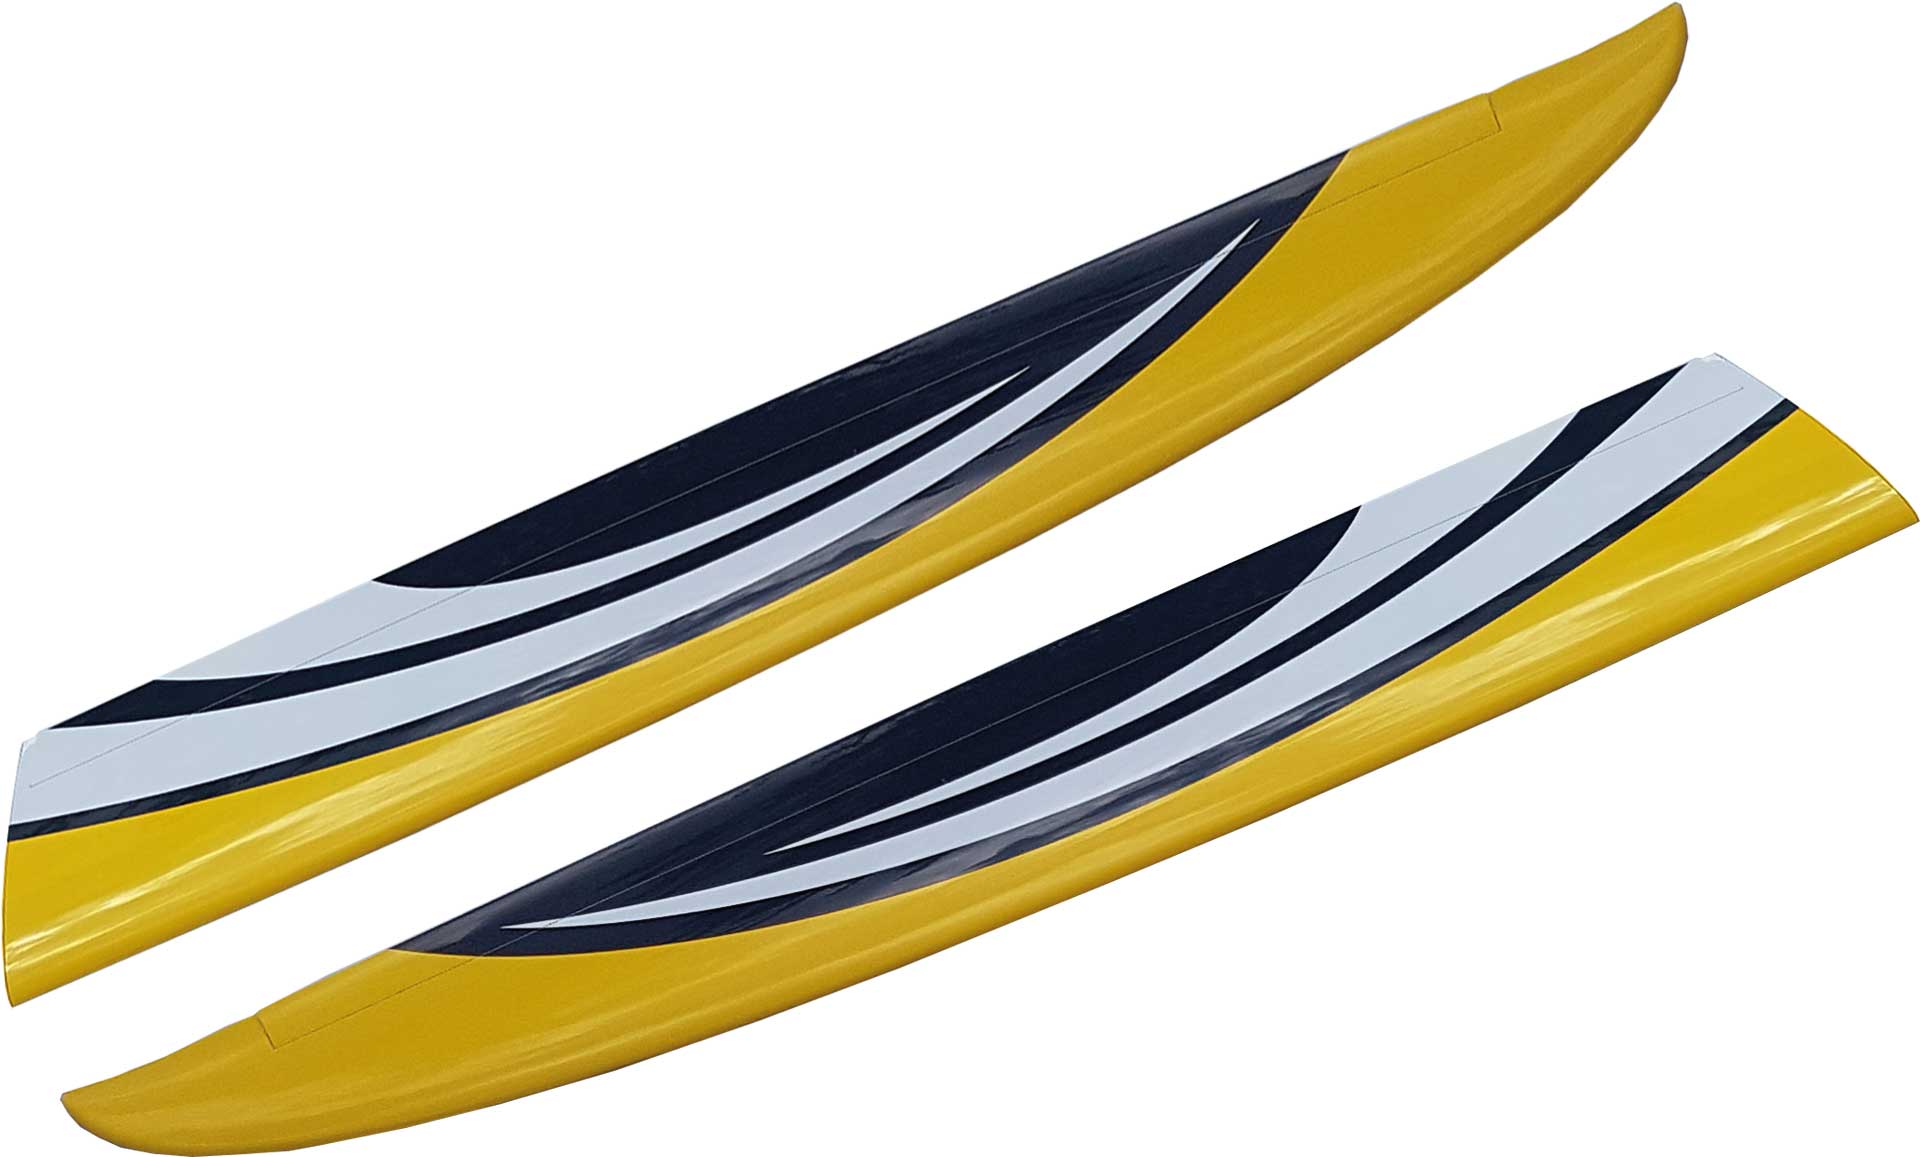 Robbe Modellsport Außenflügel SCIROCCO L 4,0m PNP inkl. Querruderservos und Steckverbindung